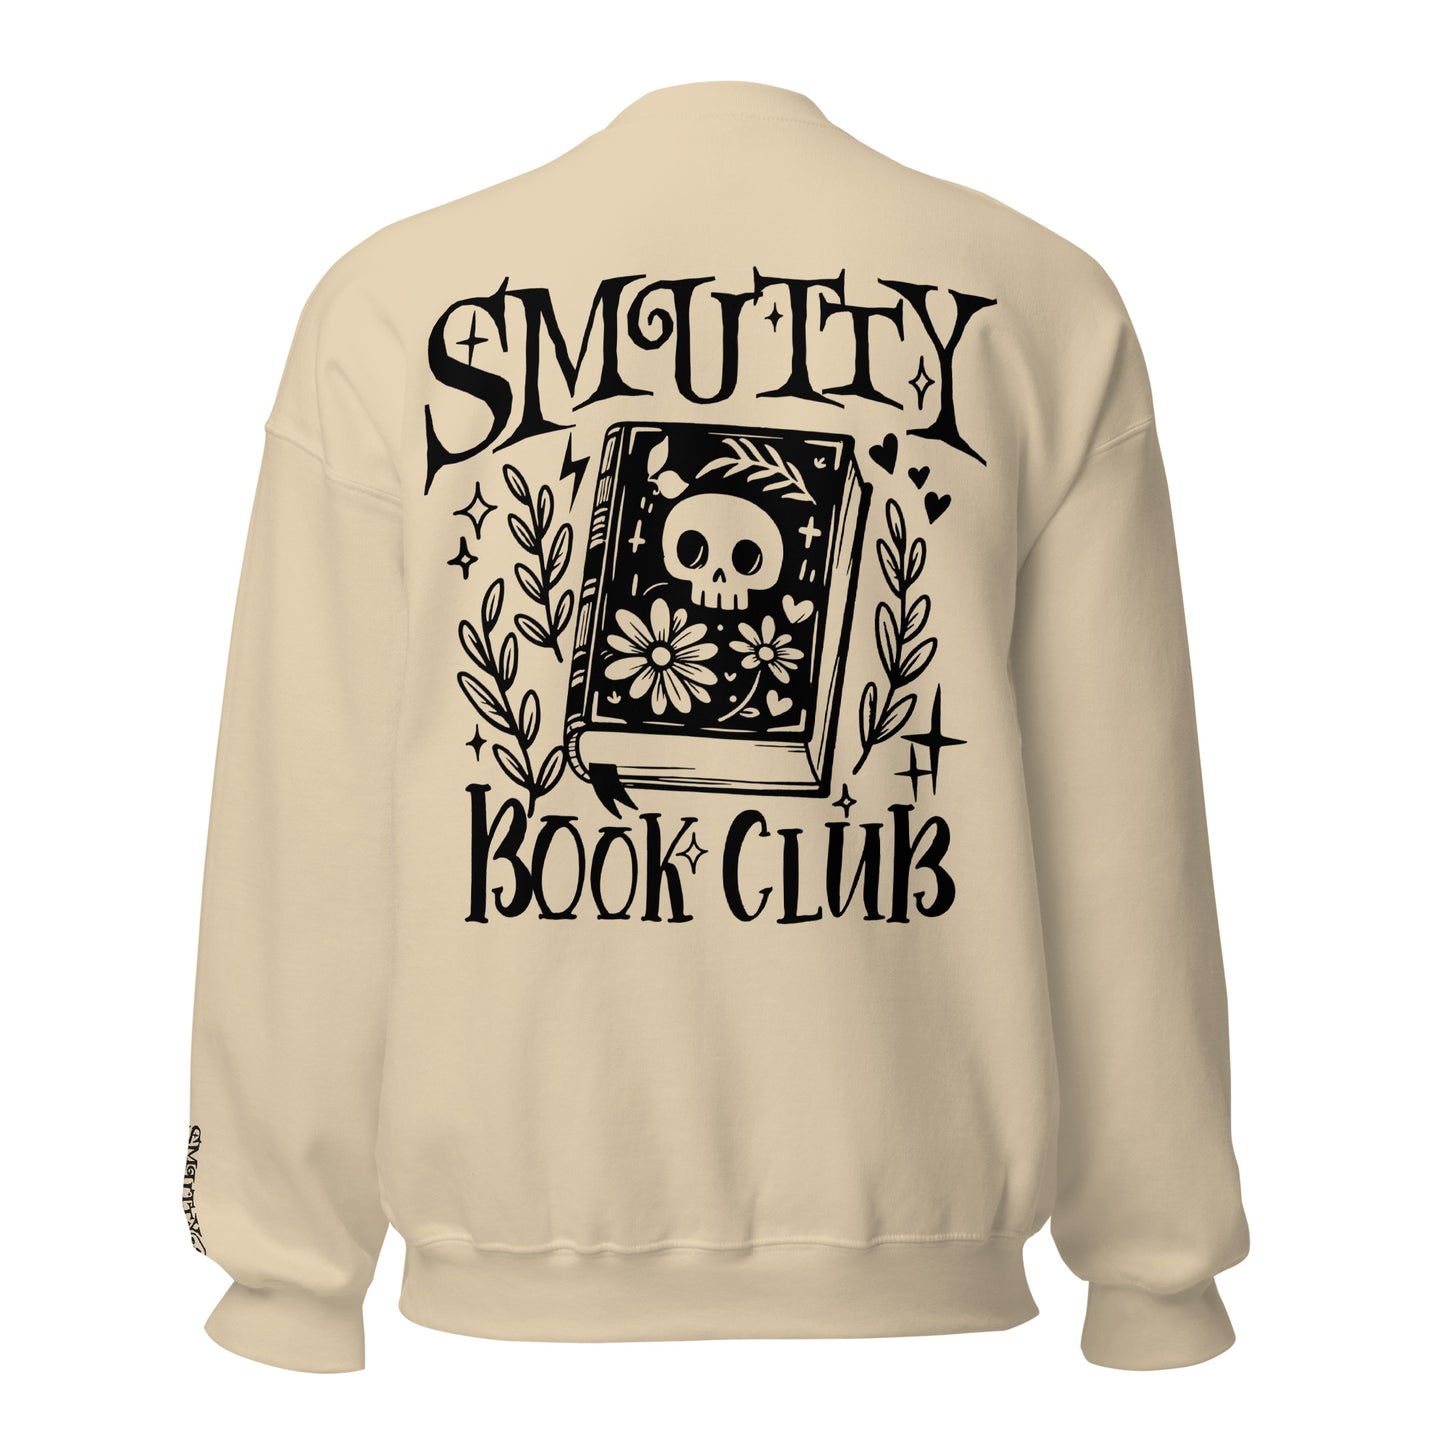 Smutty Book Club Sweatshirt - Broderi & Print